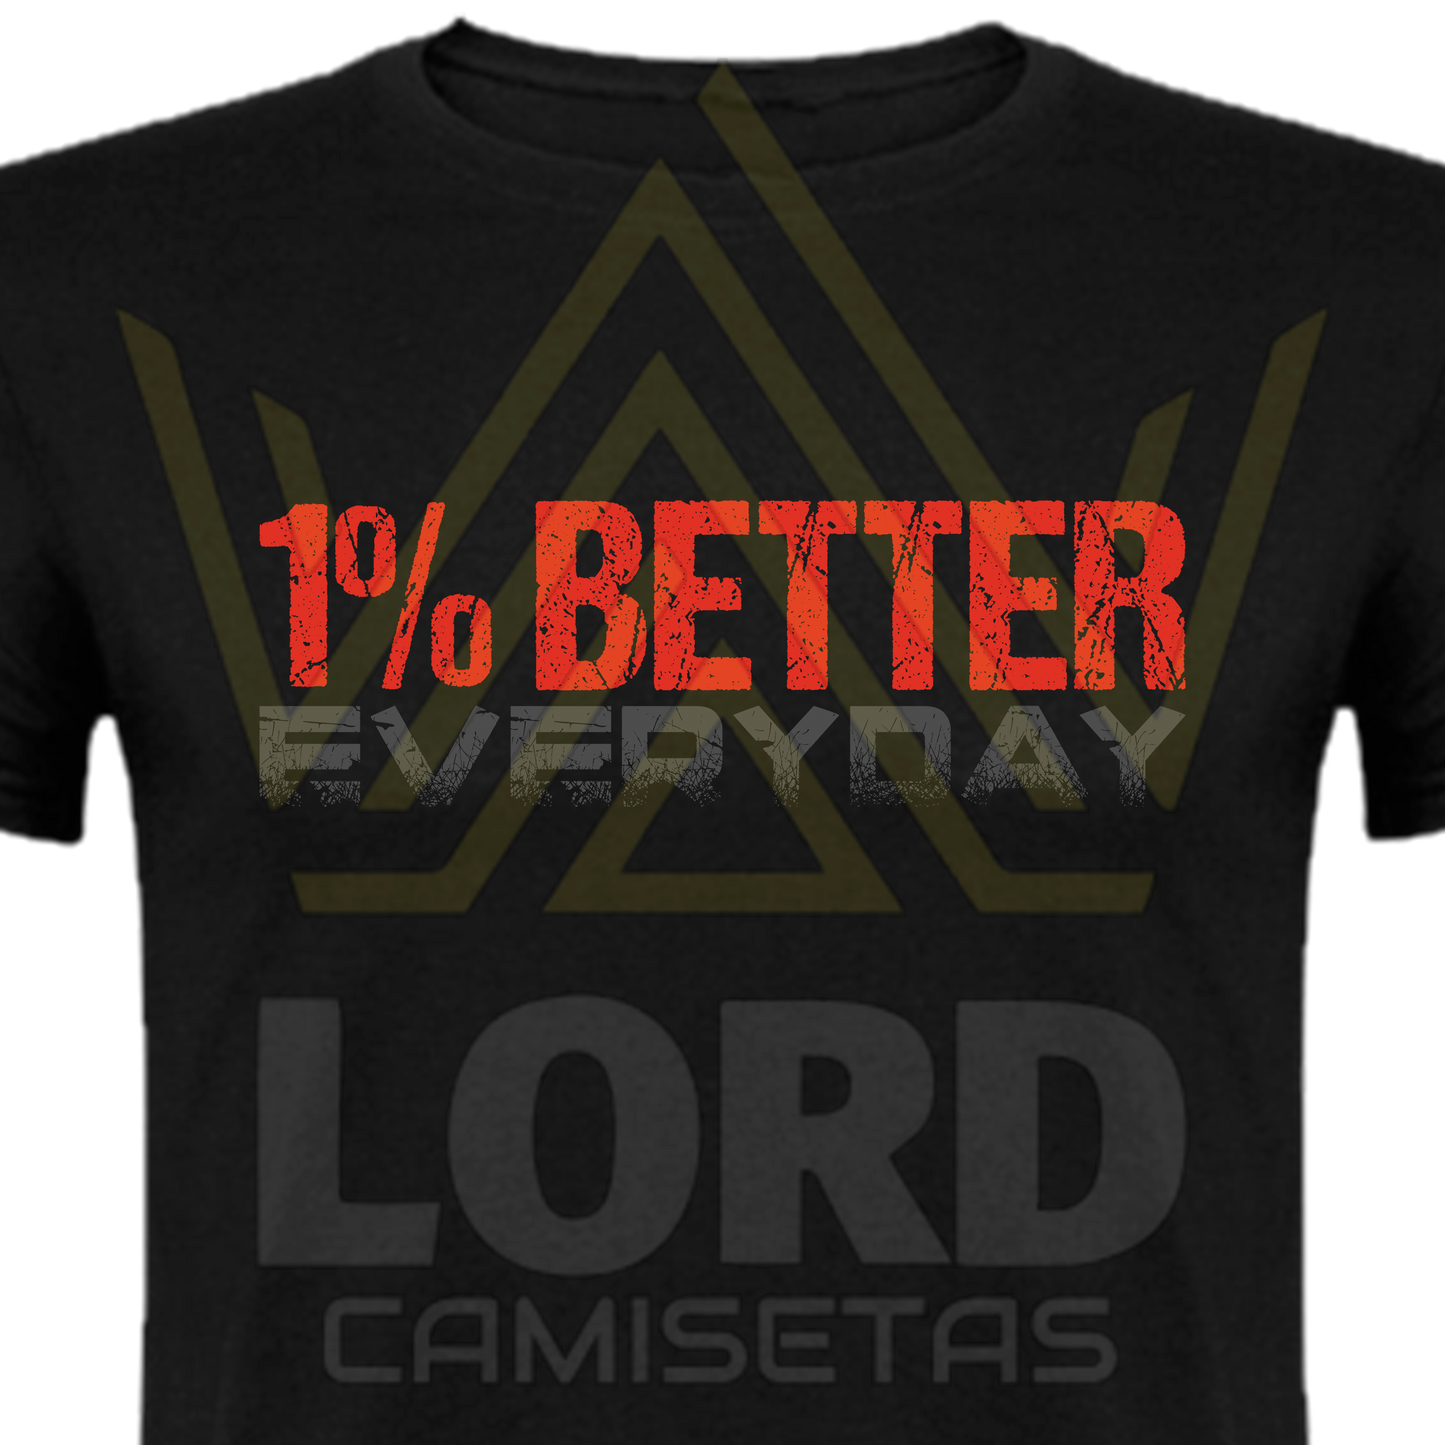 Camiseta 1% Better Everyday